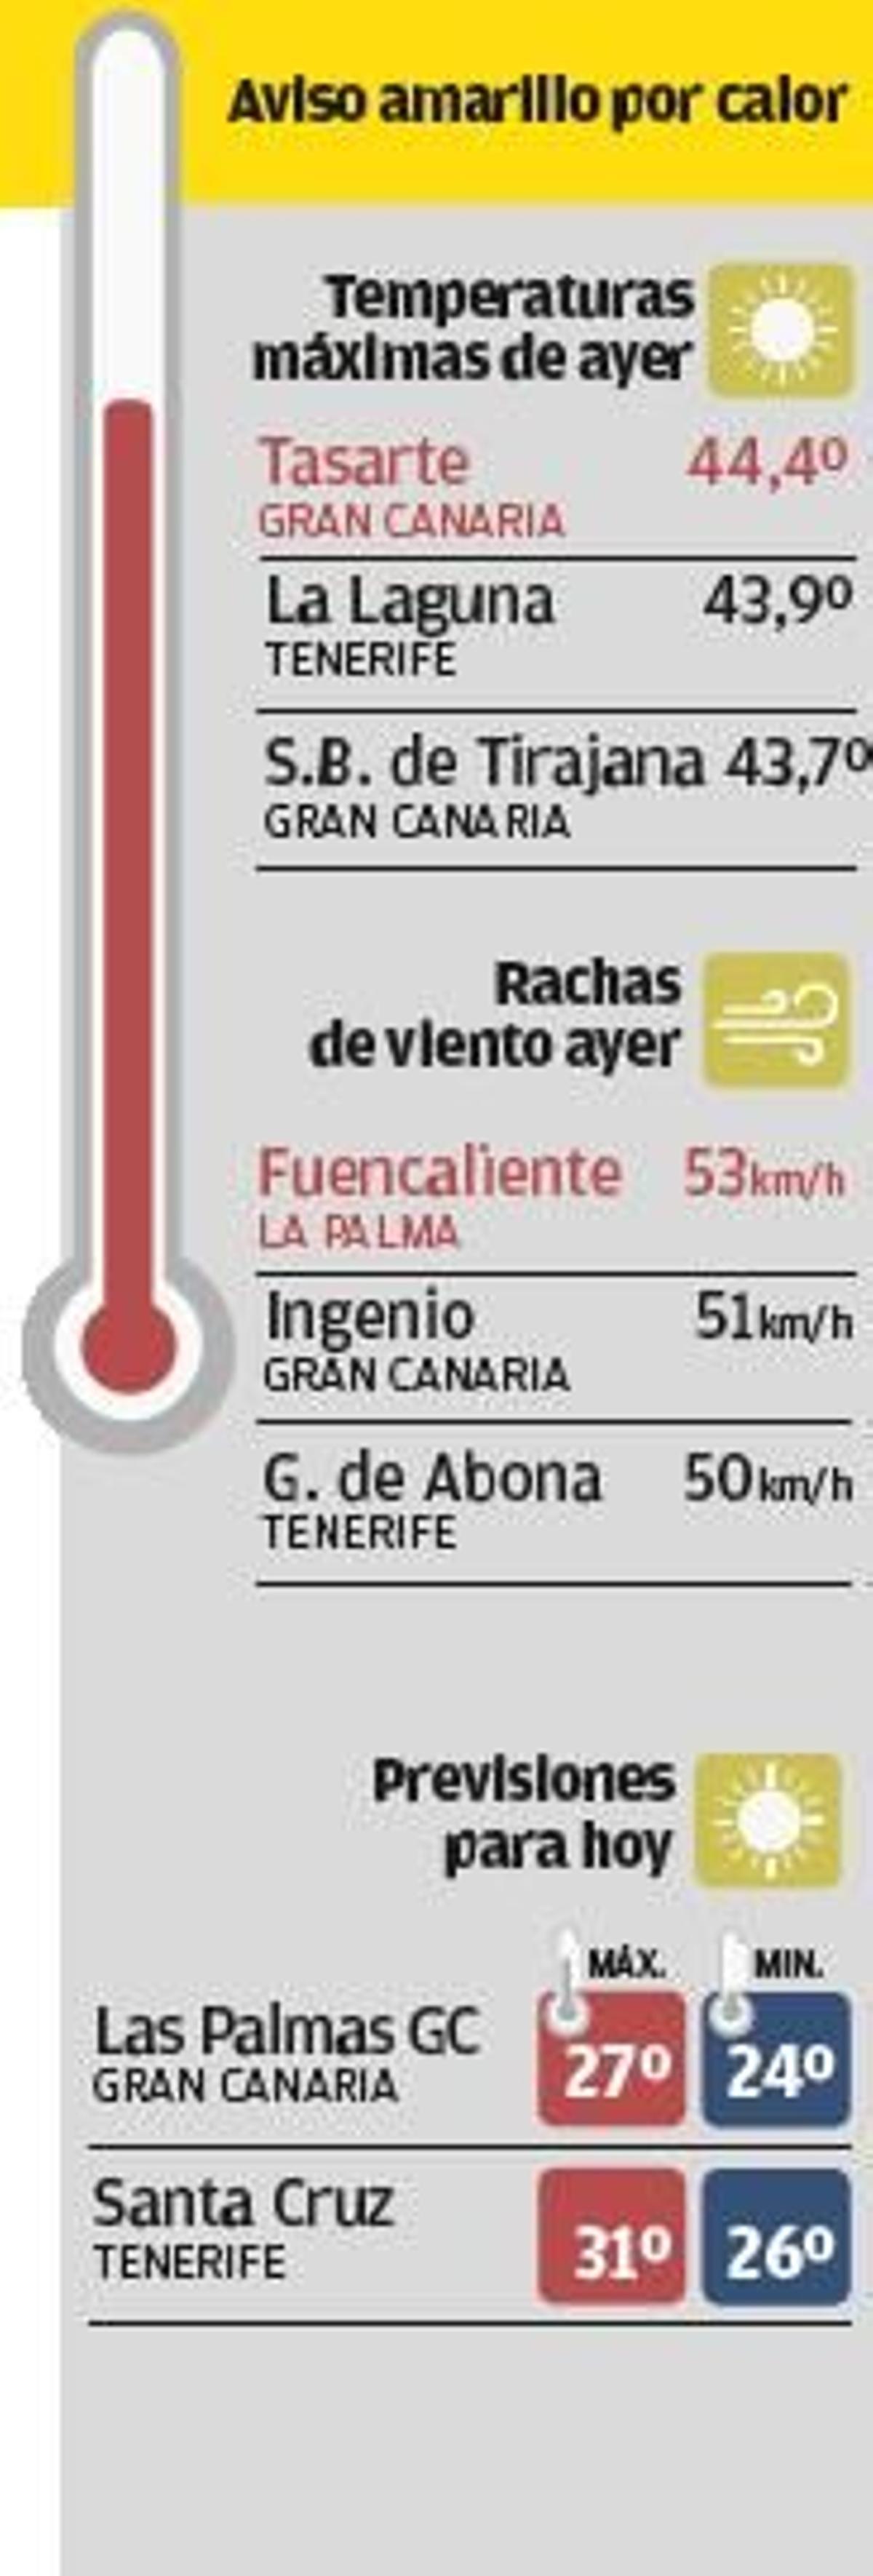 Dos senderistas mueren en plena ola de calor en Morro Jable y Tenerife.